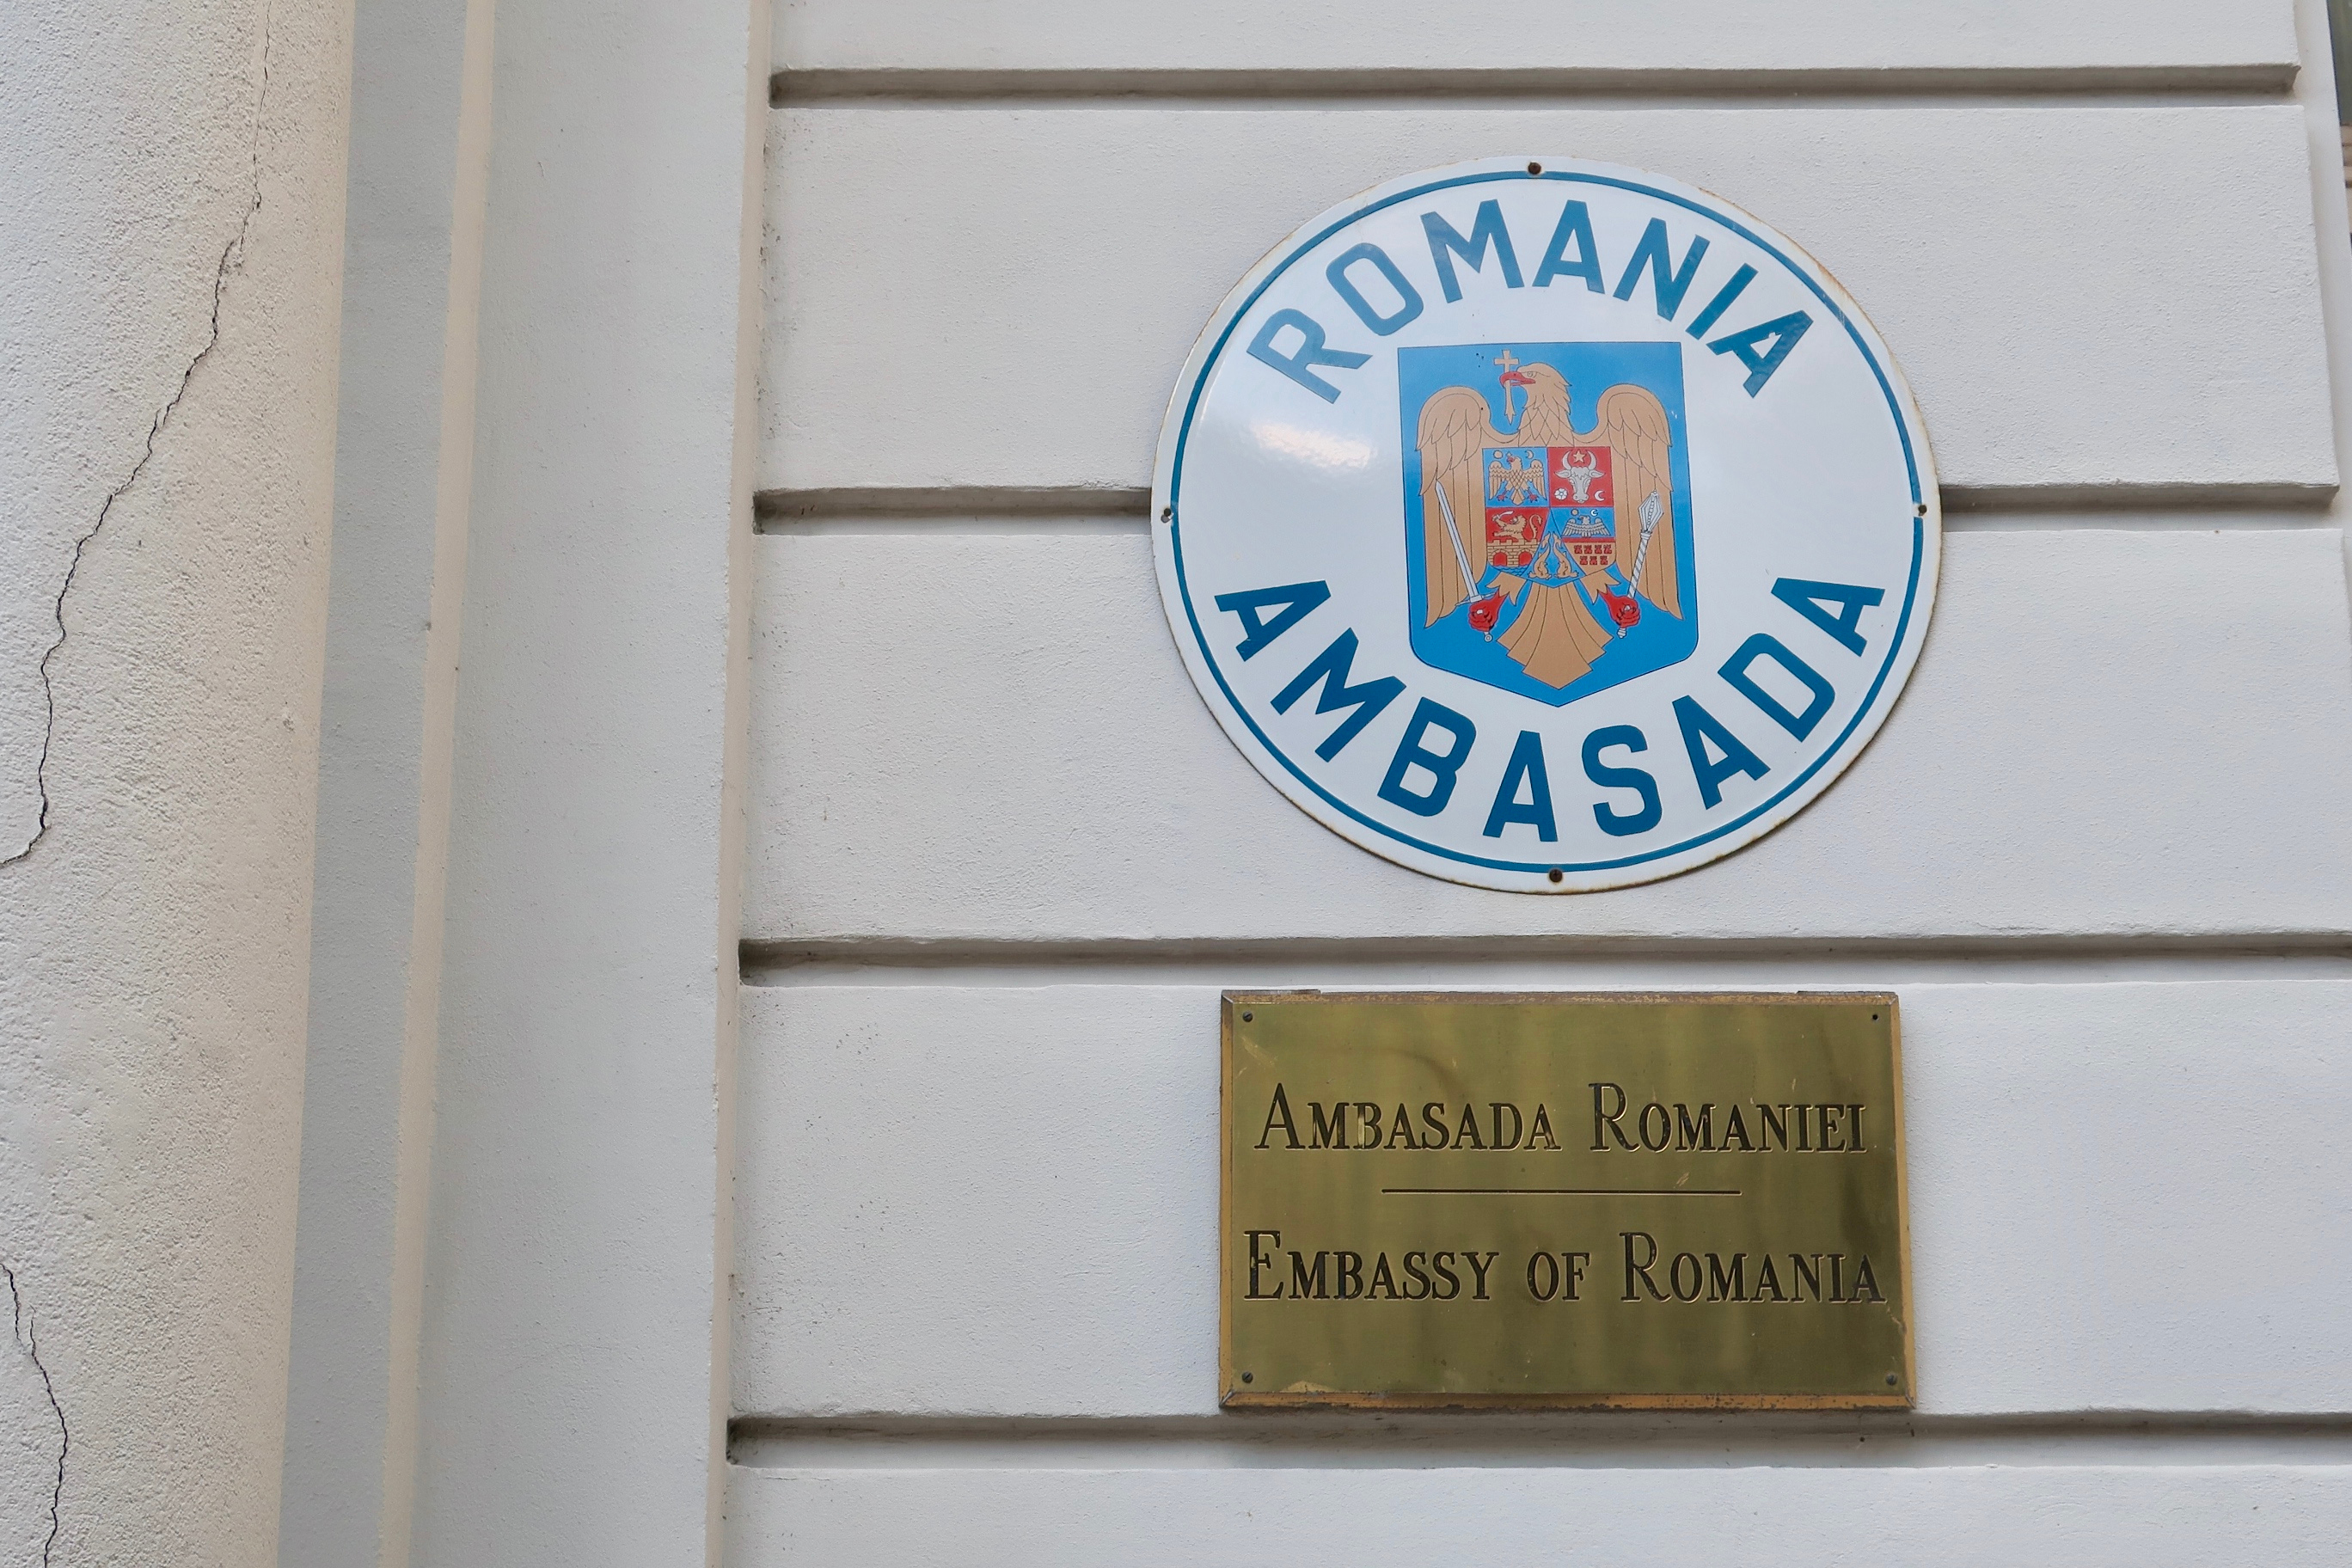 Посольство Румынии, где можно оформить студенческую визу